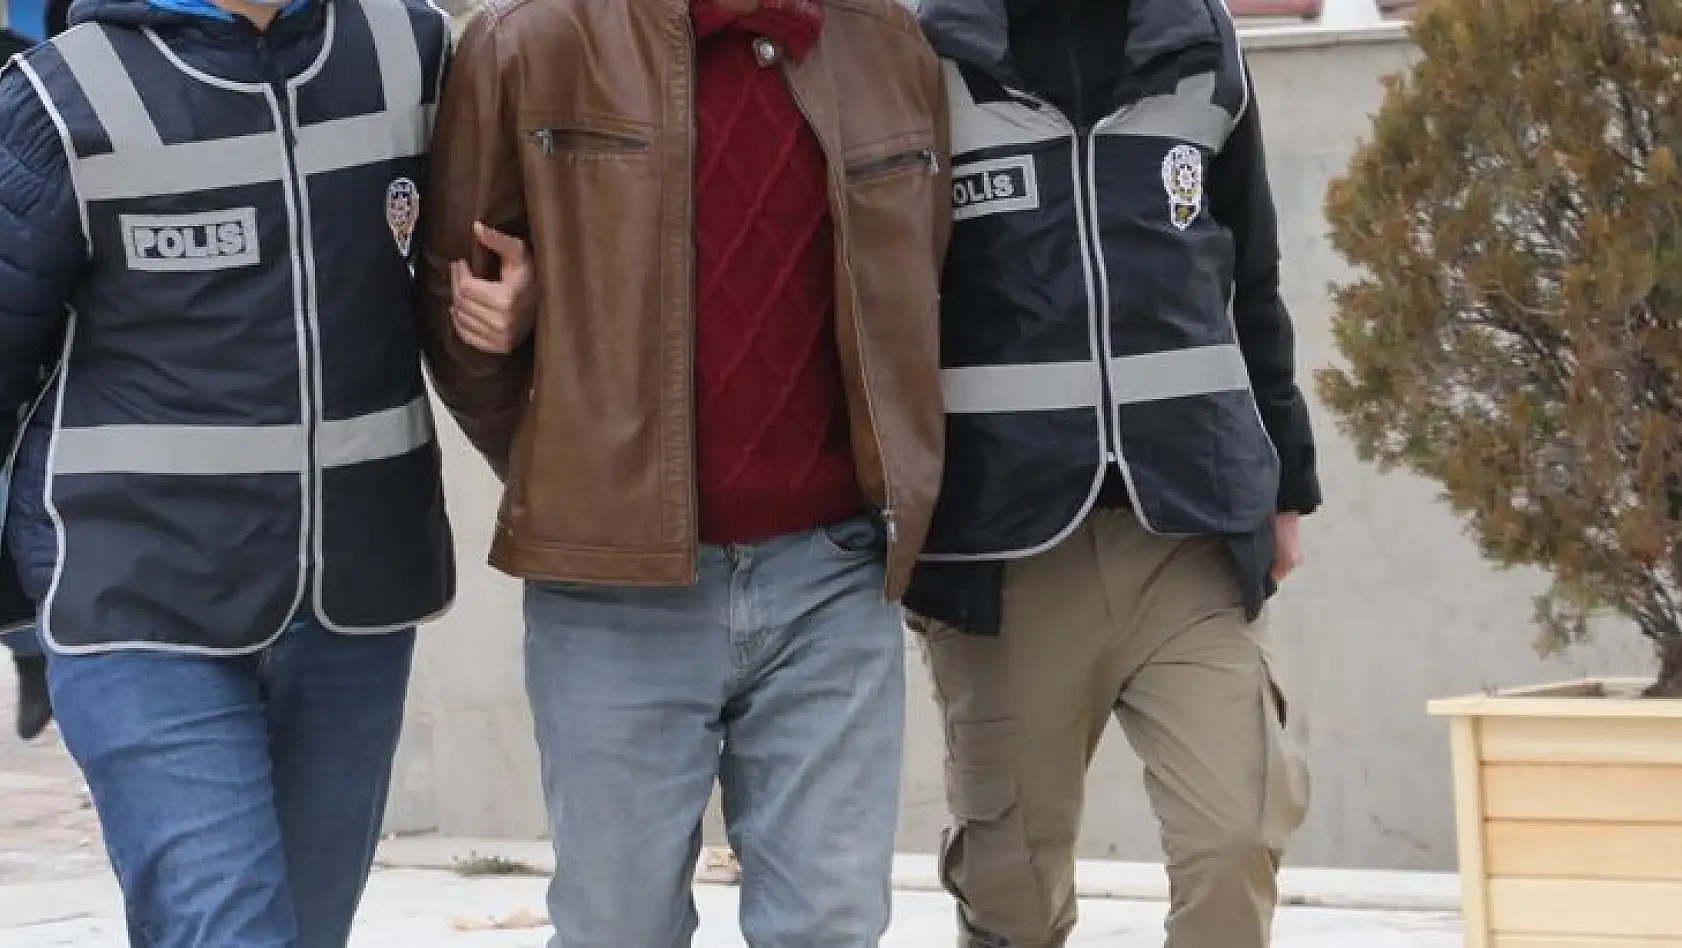 Elazığ'da Eski Kız Arkadaşının Evini Kundaklayan Şahıs Tutuklandı